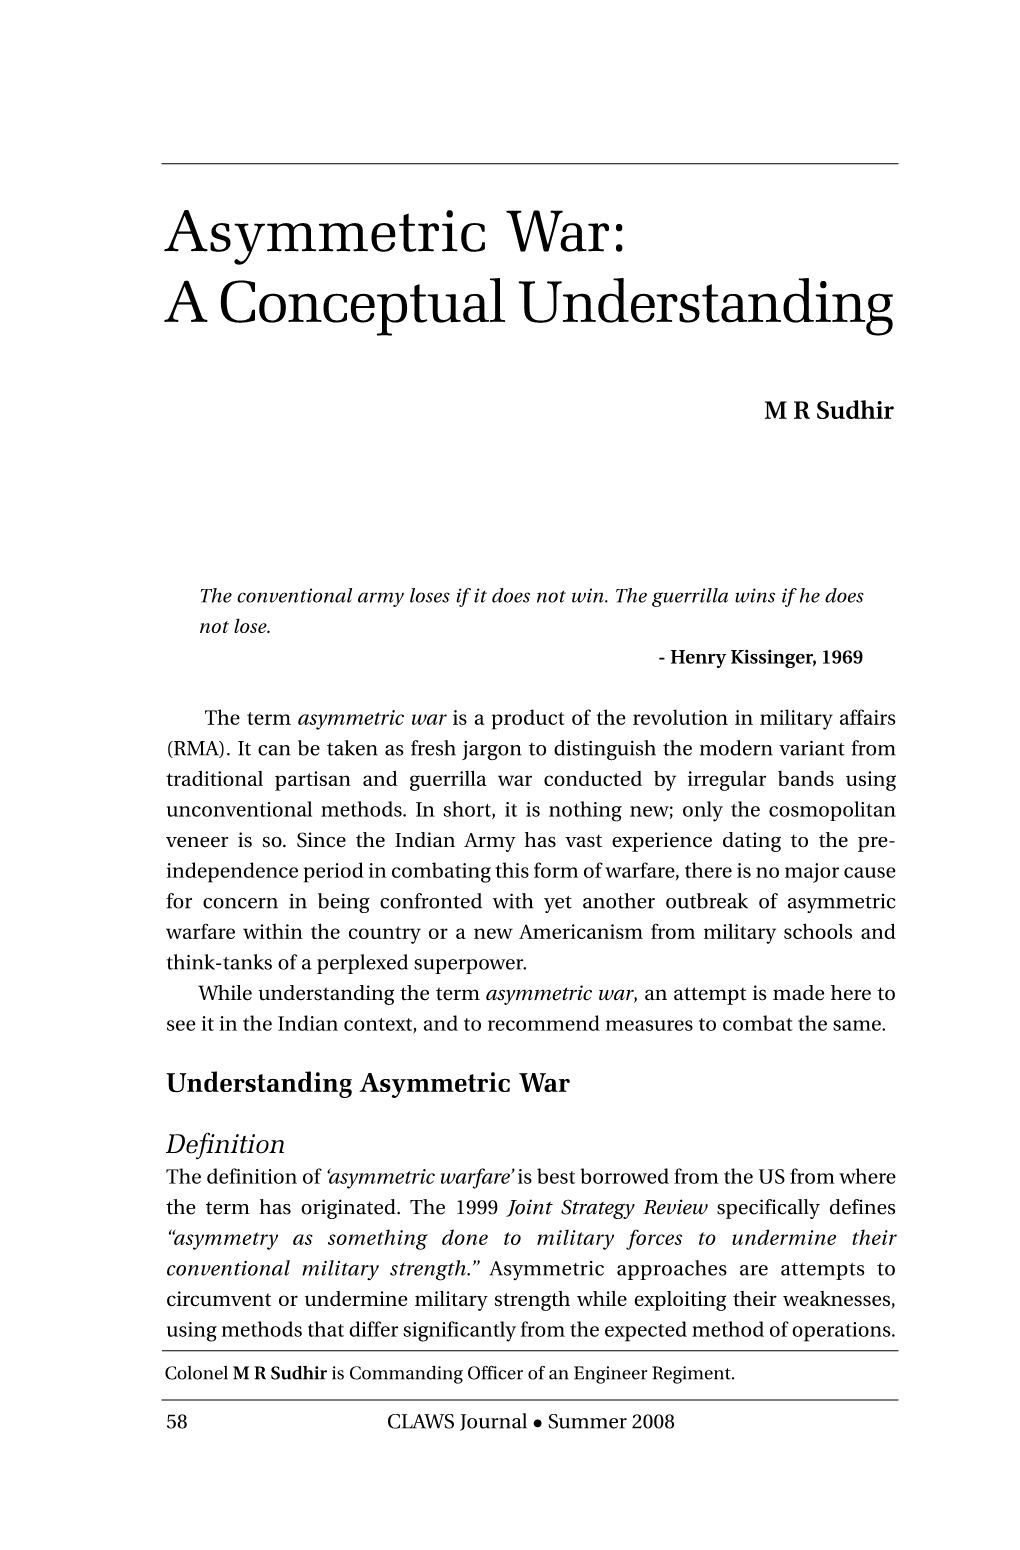 Asymmetric War: a Conceptual Understanding